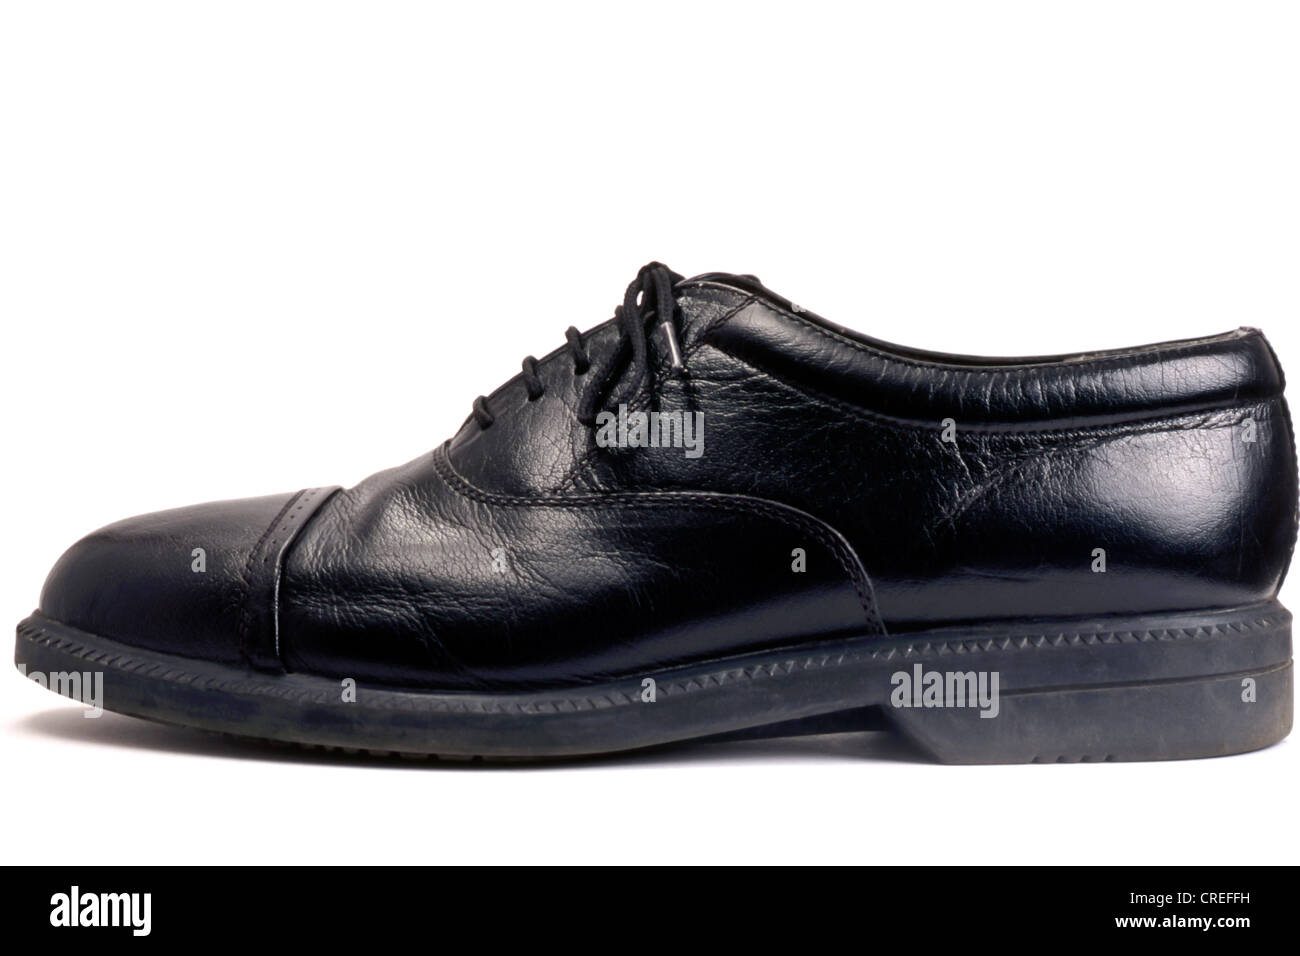 men's black shoe isolated on white background Stock Photo